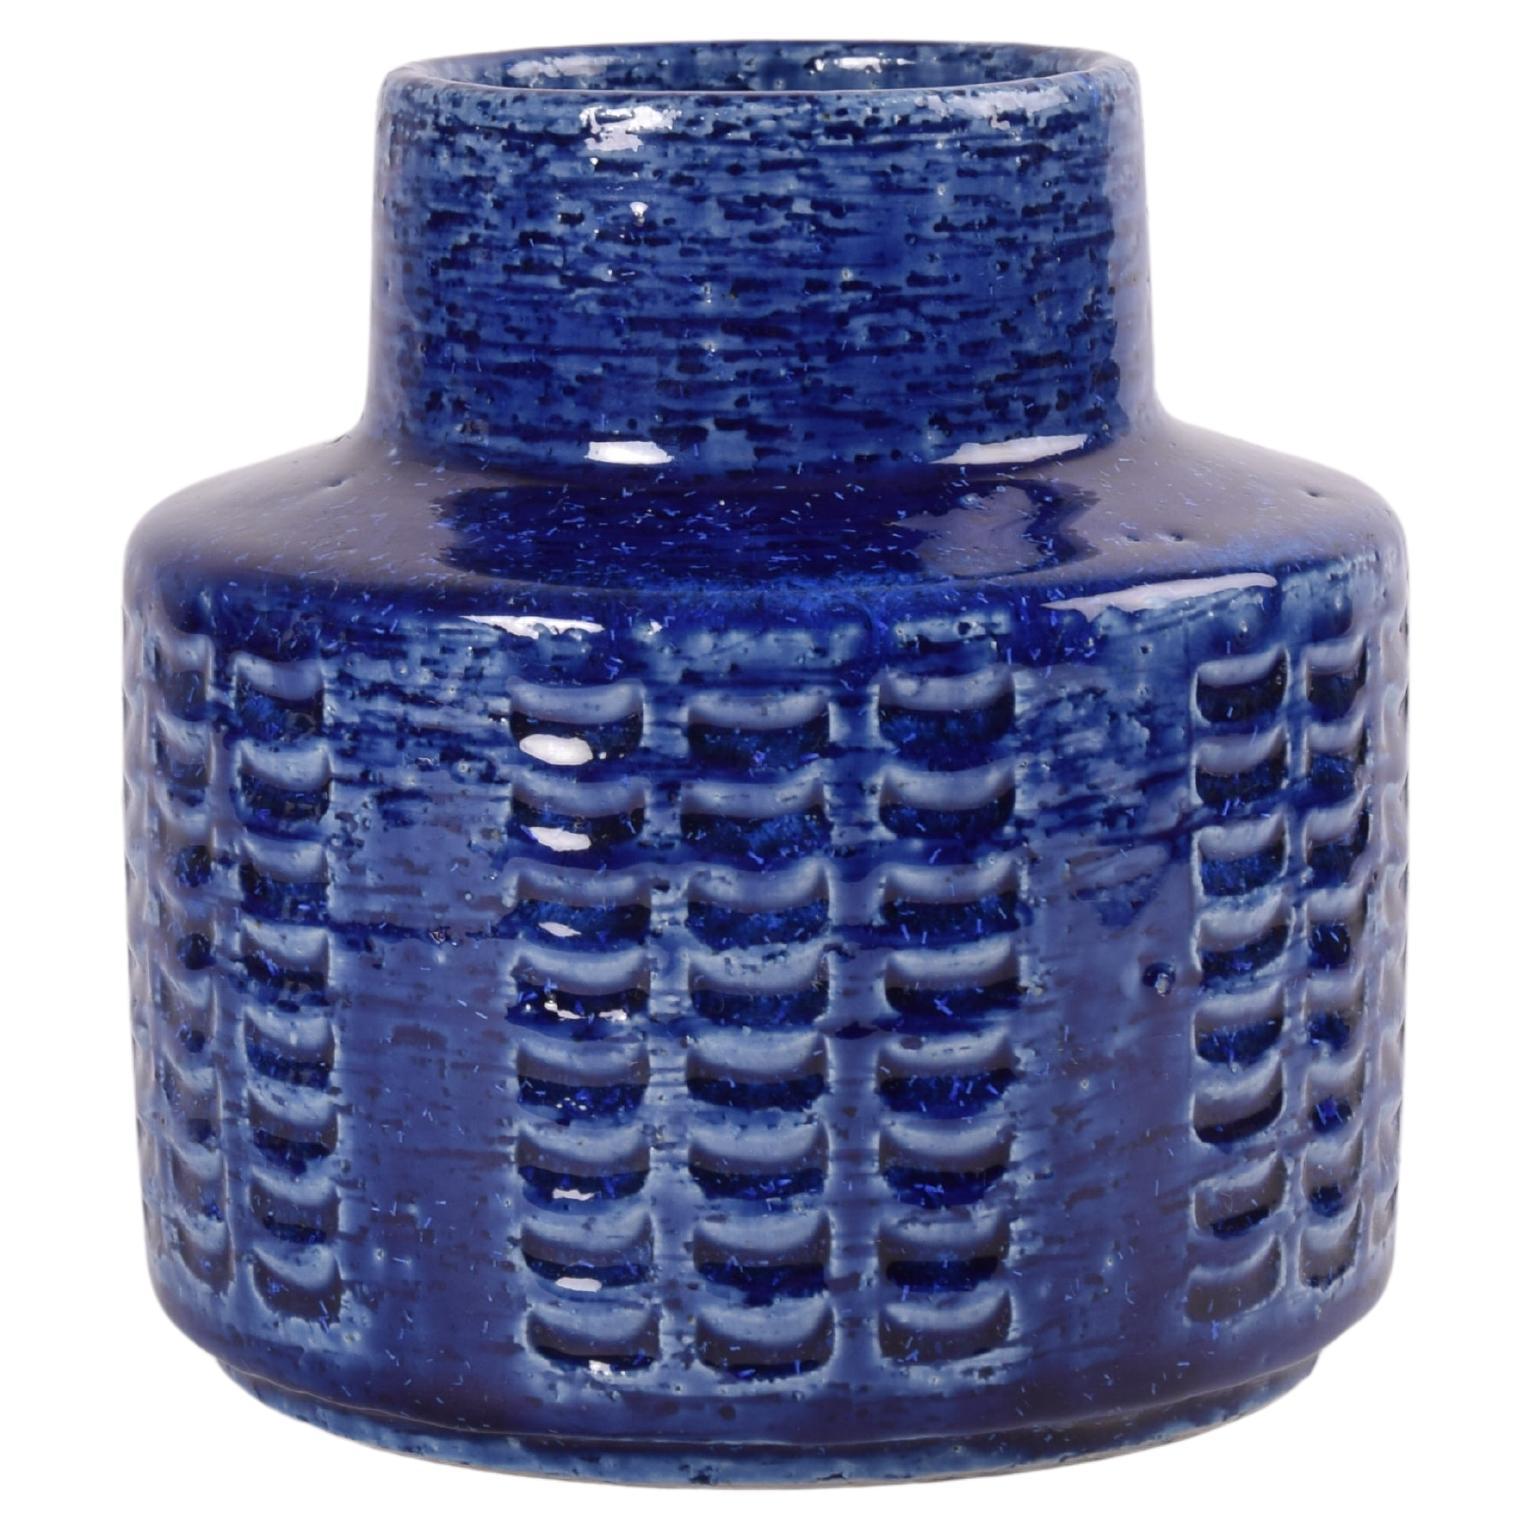 Palshus Ceramic Vase Cobalt Blue by Per Linnemann-Schmidt, Danish 1960s For Sale